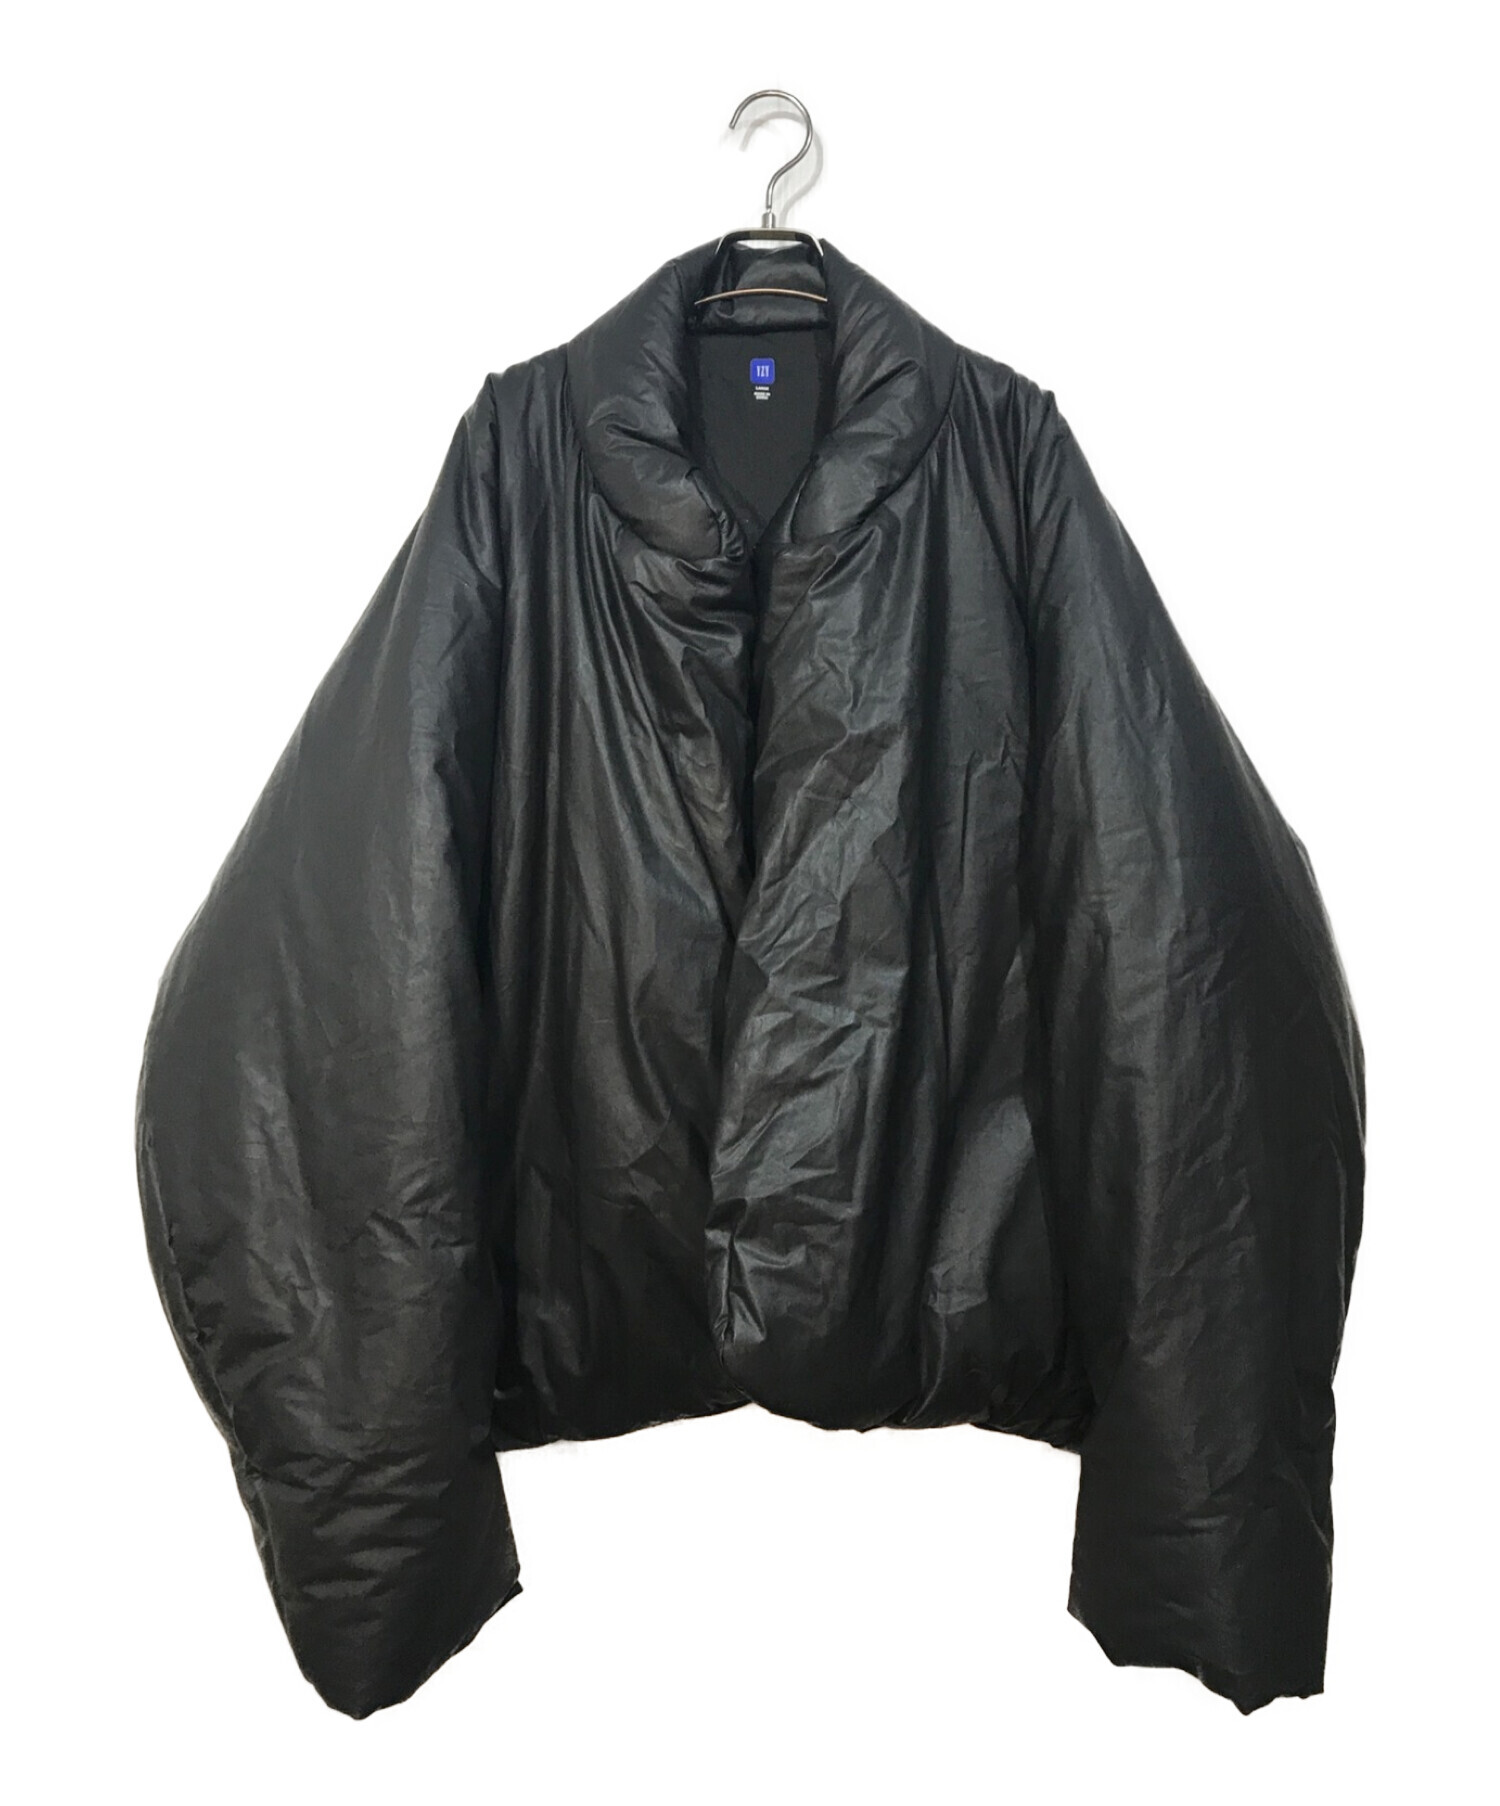 YEEZY×GAP (イージー×ギャップ) Round Jacket ブラック サイズ:L